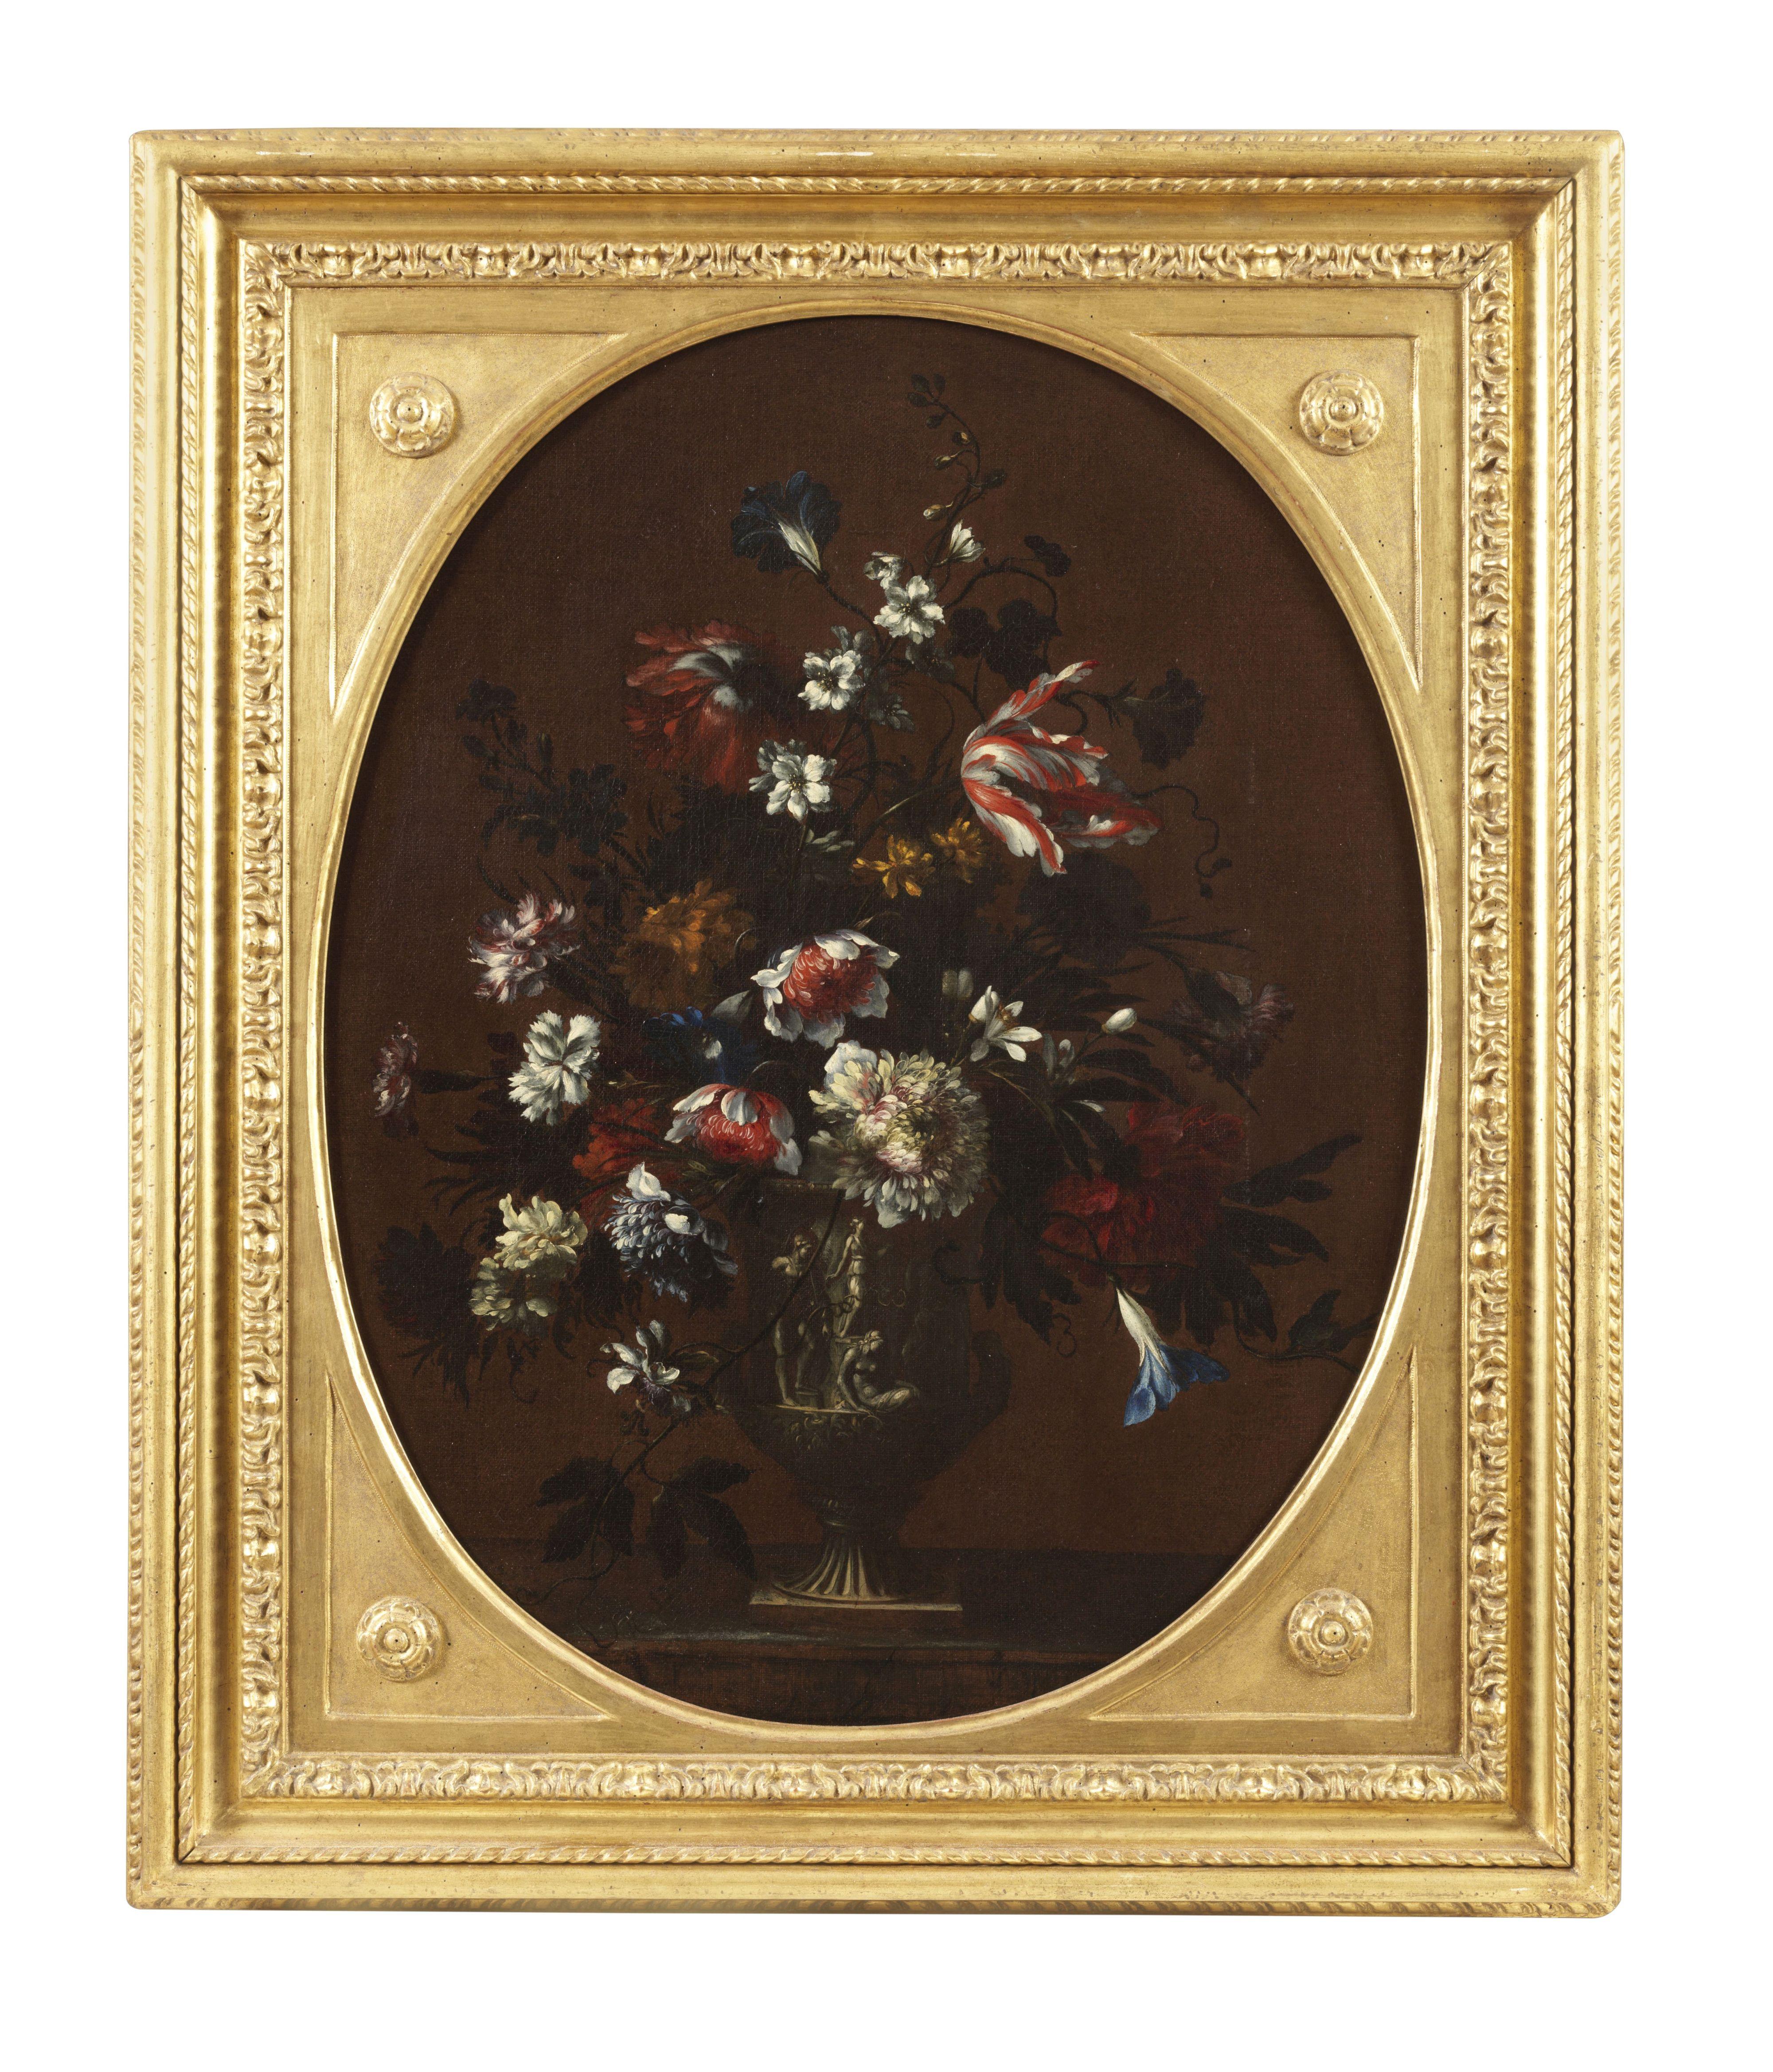 Gemälde, Öl auf Leinwand, 82 x 67,5 cm ungerahmt und 98 x 82 cm gerahmt, des Malers Nicolas Baudesson ( Troyes 1611 - Paris 1680 ).
Nicolas Baudesson wurde in Troyes als Sohn einer Künstlerfamilie geboren und wuchs trotz einiger Rückkehrer in seine